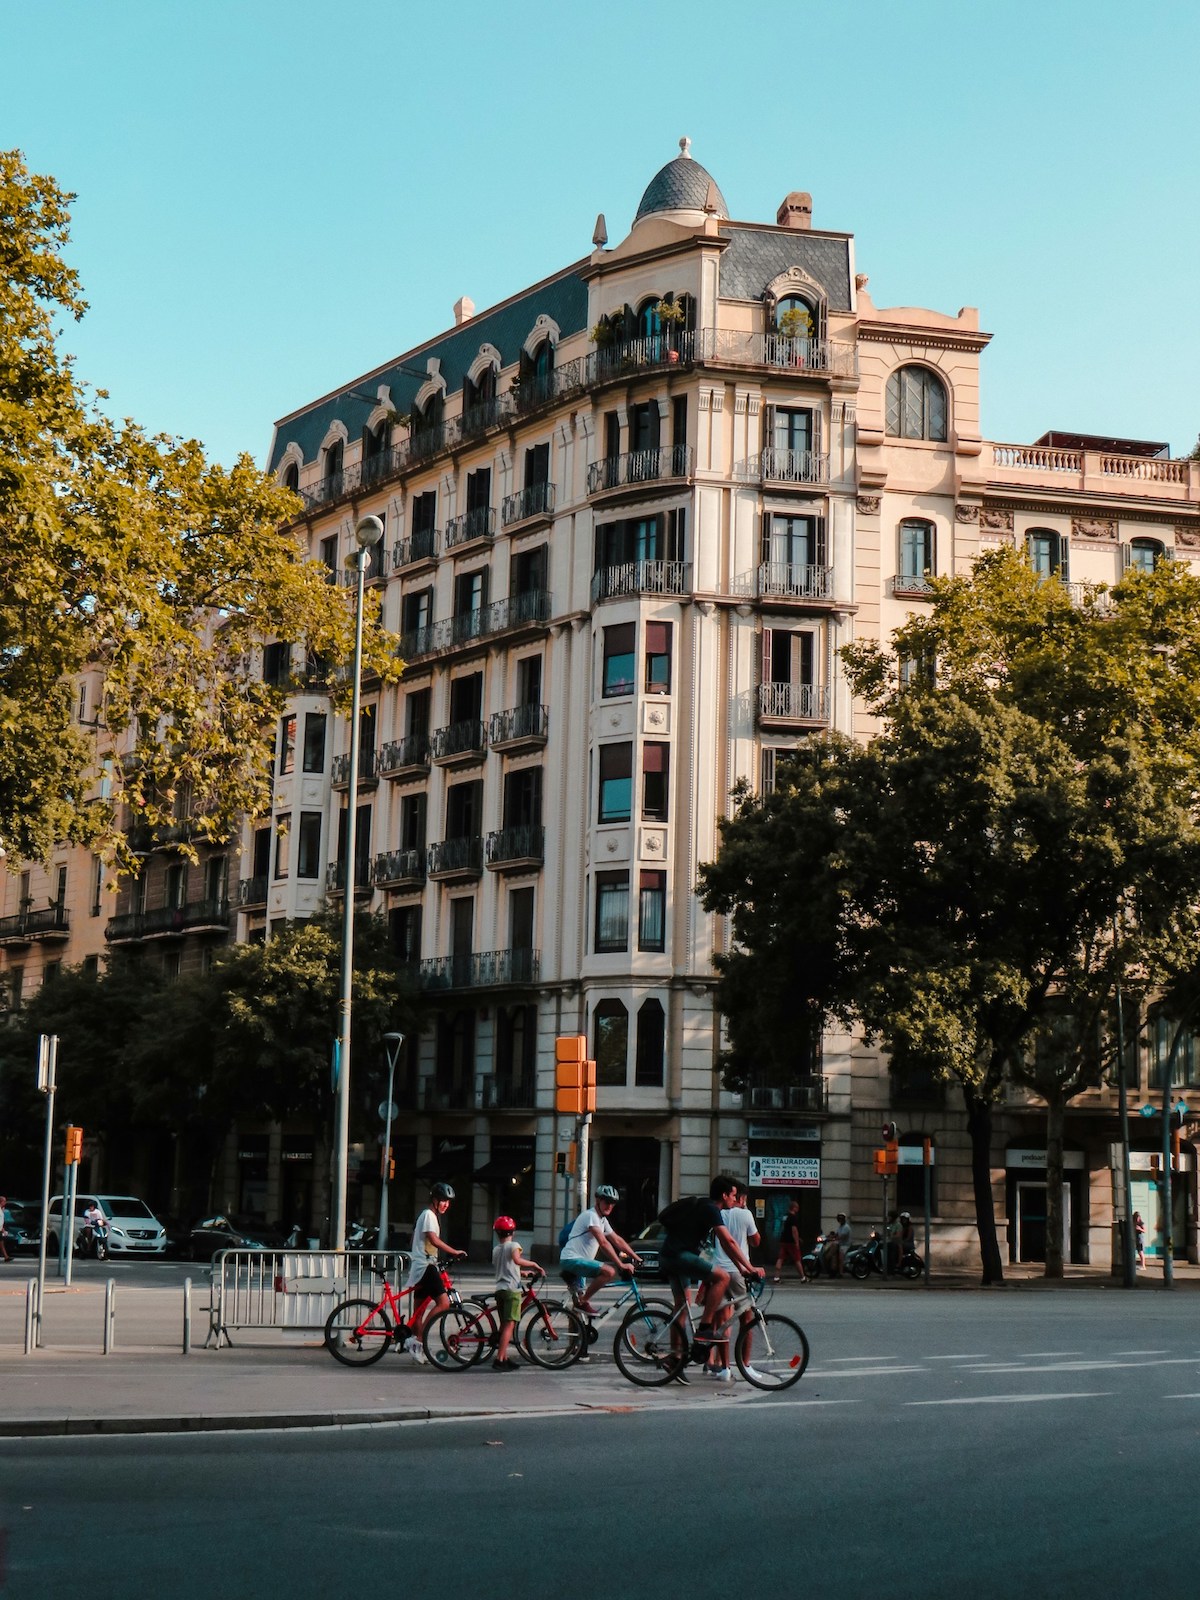 Family rent bikes in Barcelona